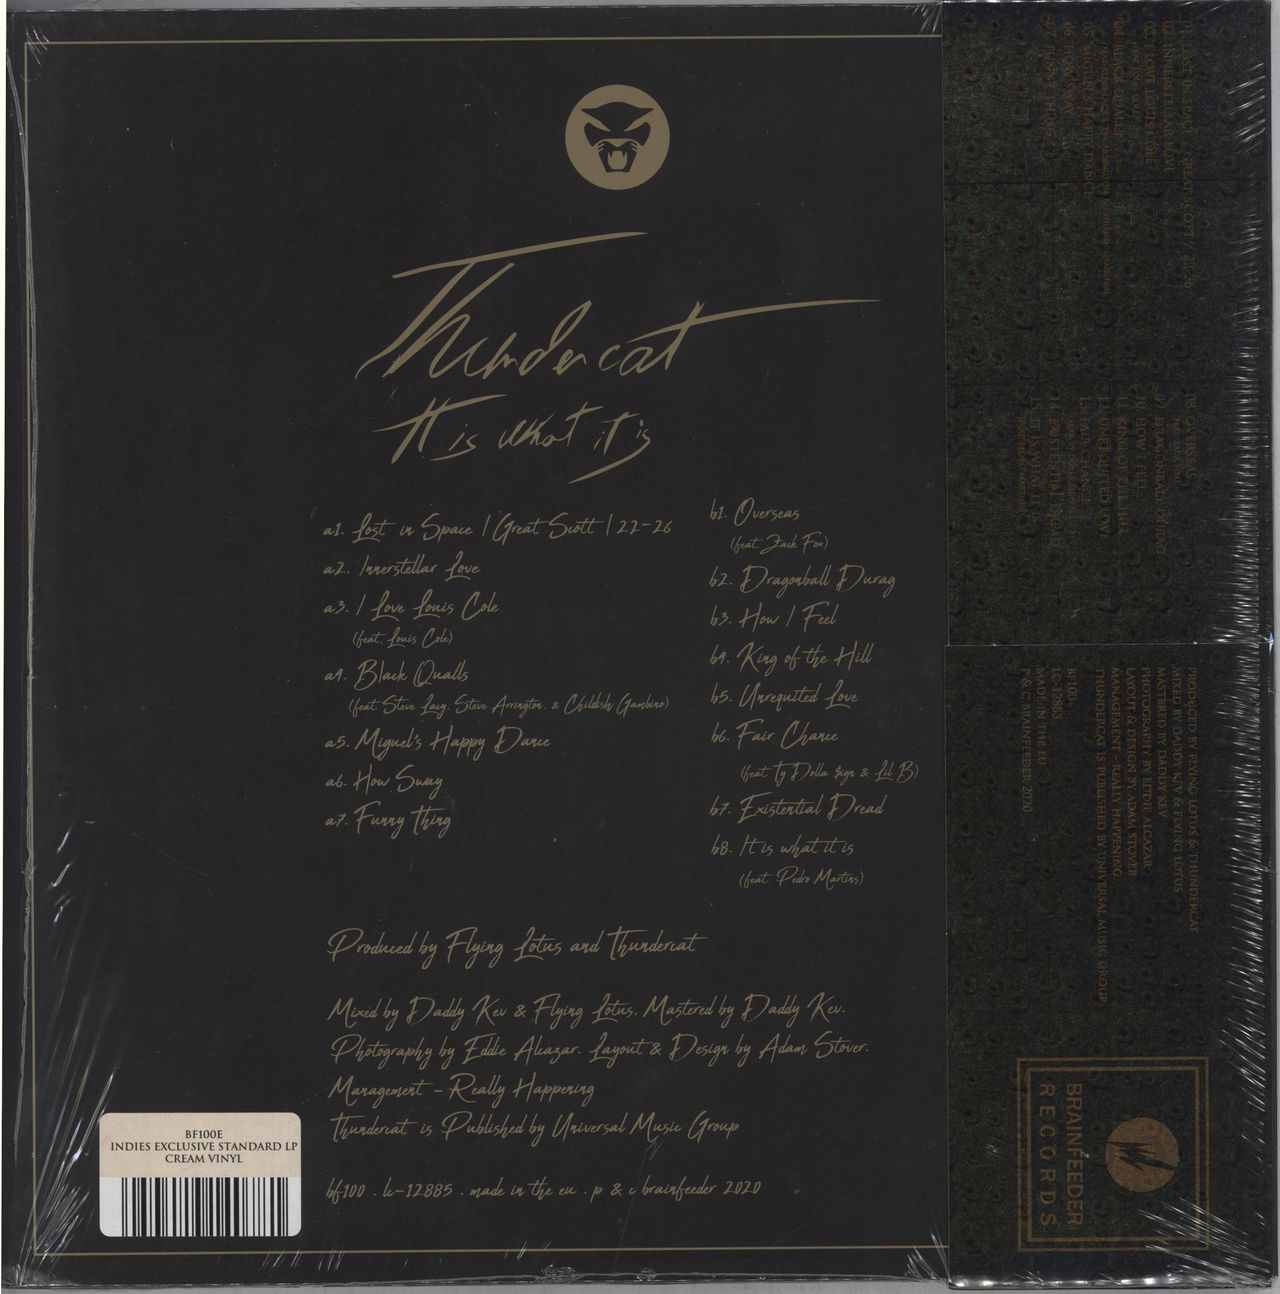 Thundercat - It Is What It Is - Vinyl Cream Vinyl